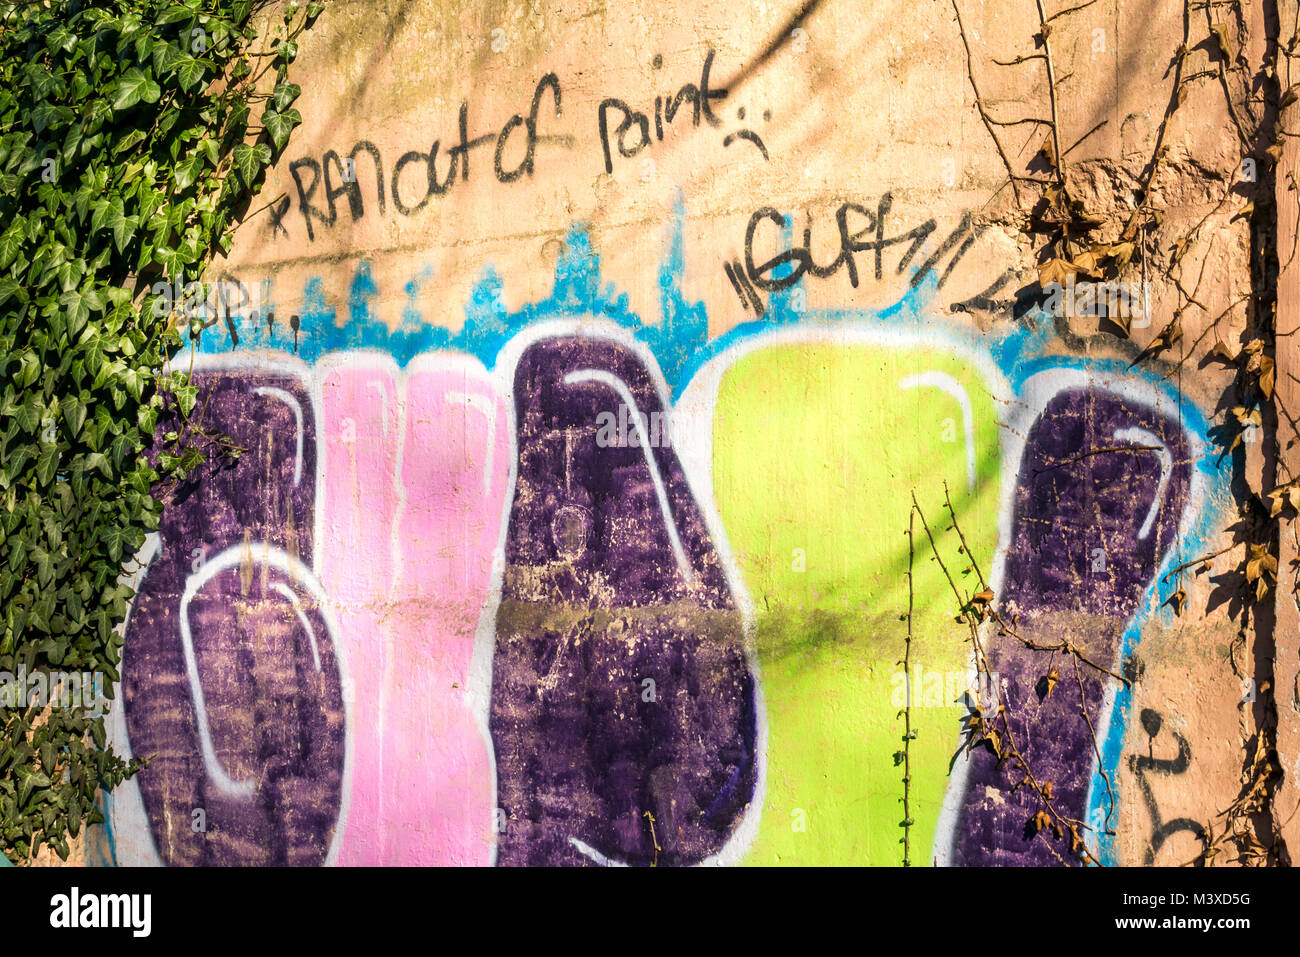 Graffiti peint à la bombe sur le mur, qui se lit à court de peinture, Ecosse, Royaume-Uni Banque D'Images